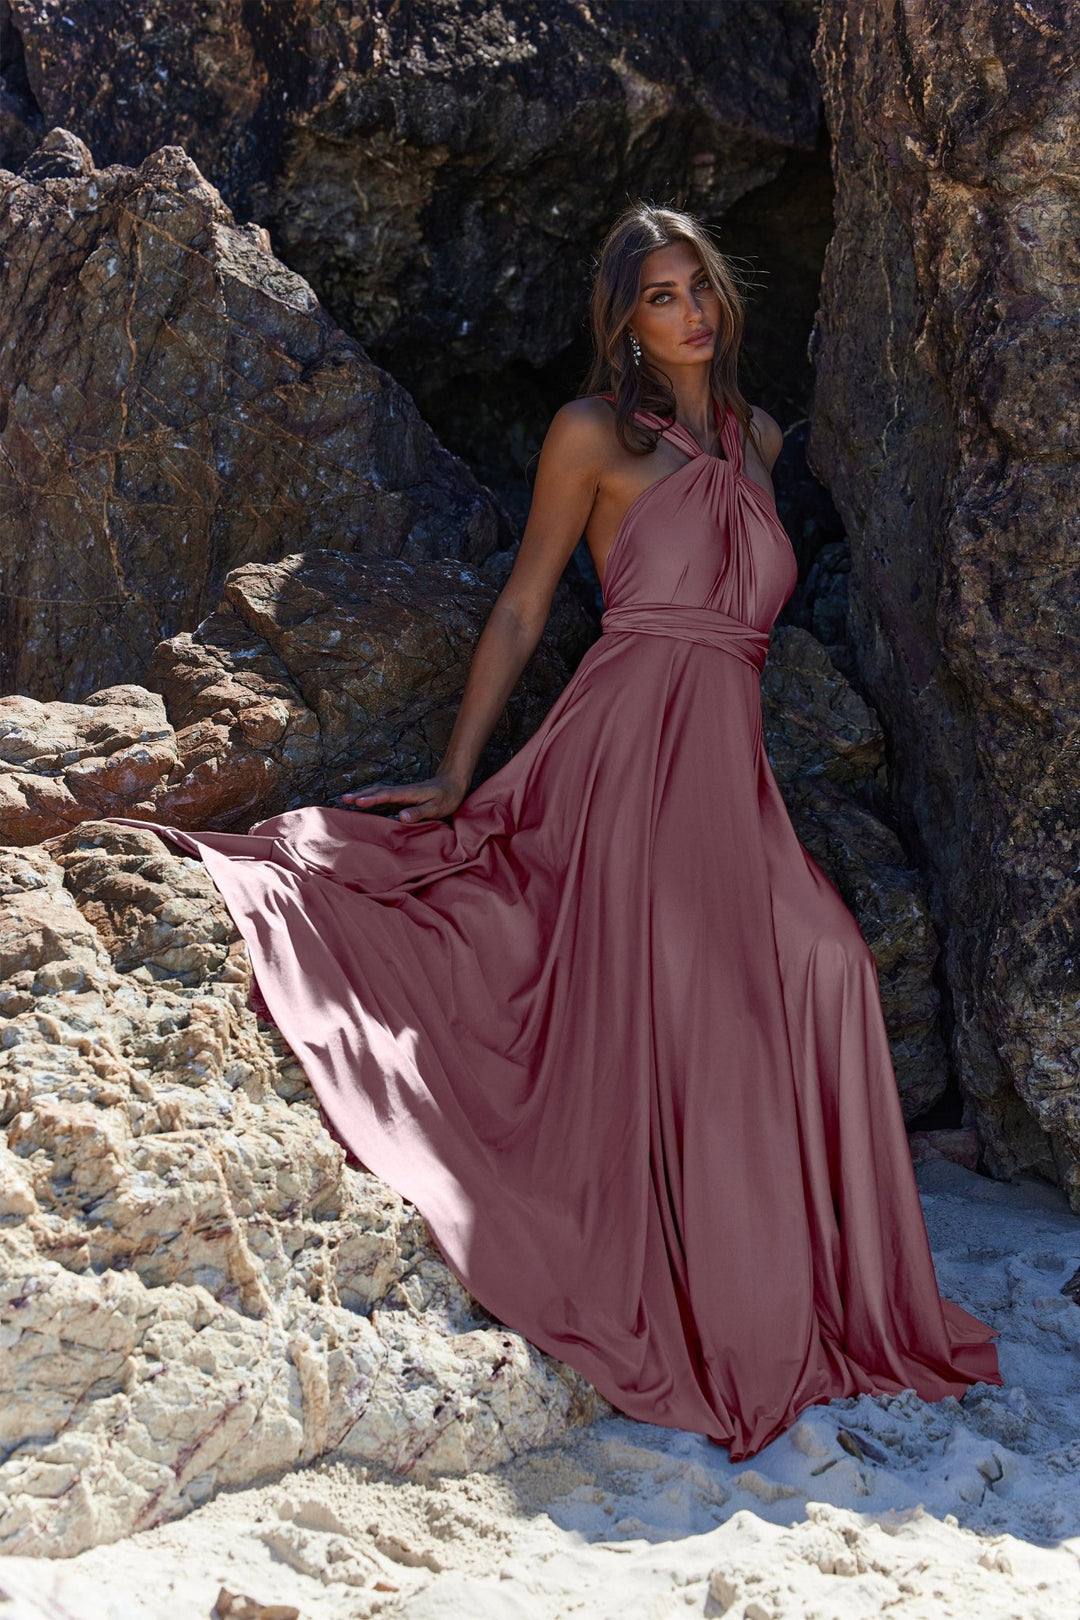 Wrap Dress By Tania Olsen PO31 - ElissaJay Boutique